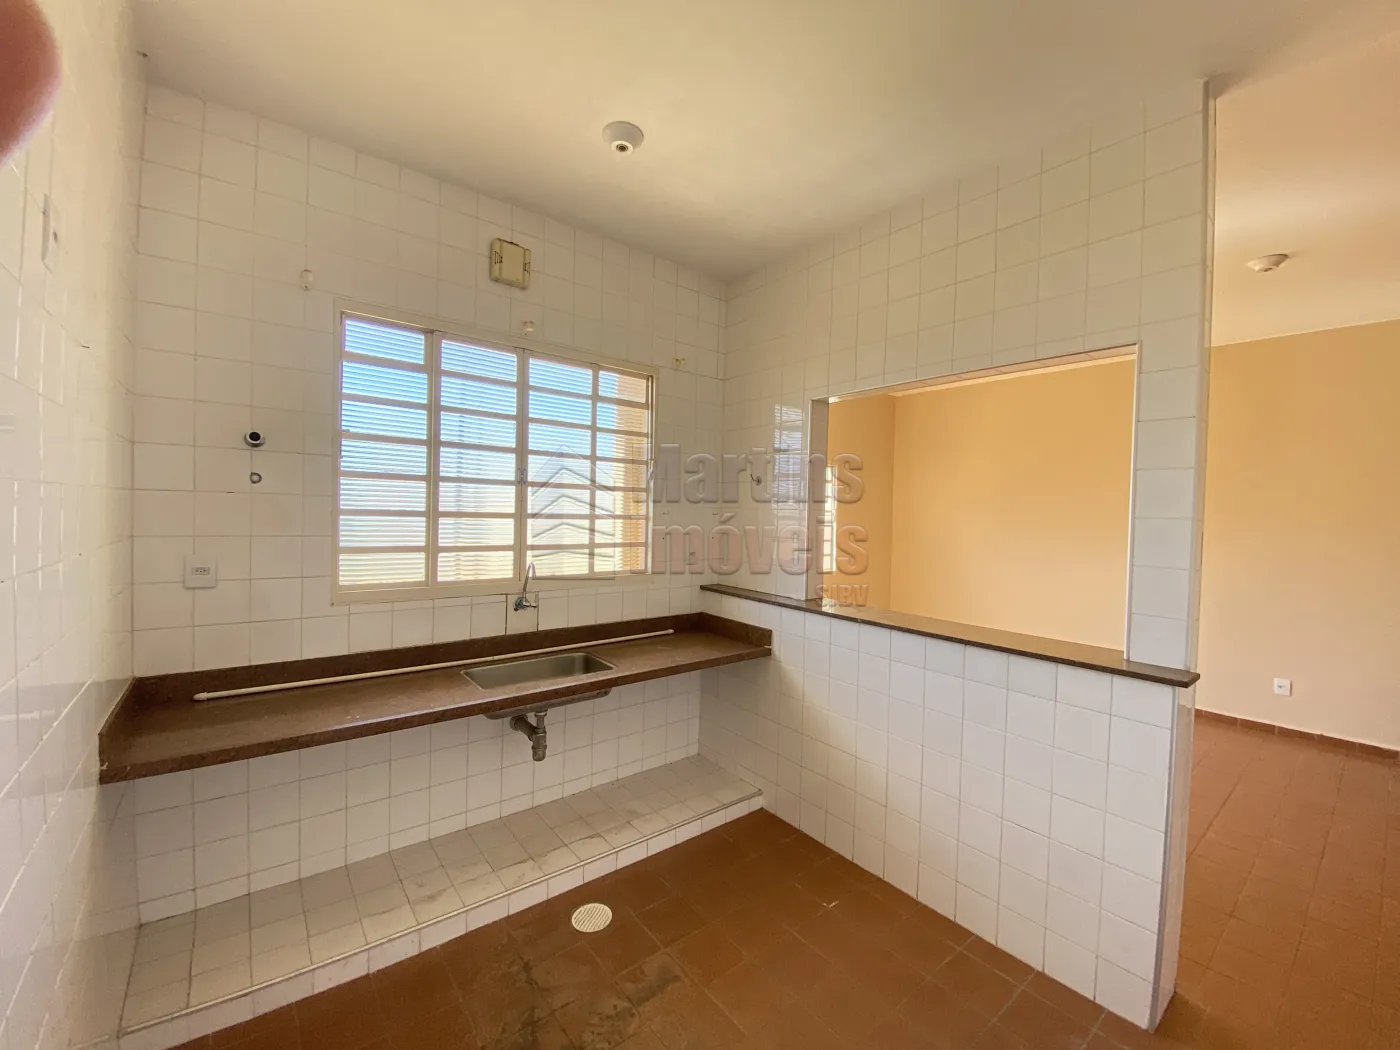 Alugar Casa / Padrão em São João da Boa Vista R$ 950,00 - Foto 8